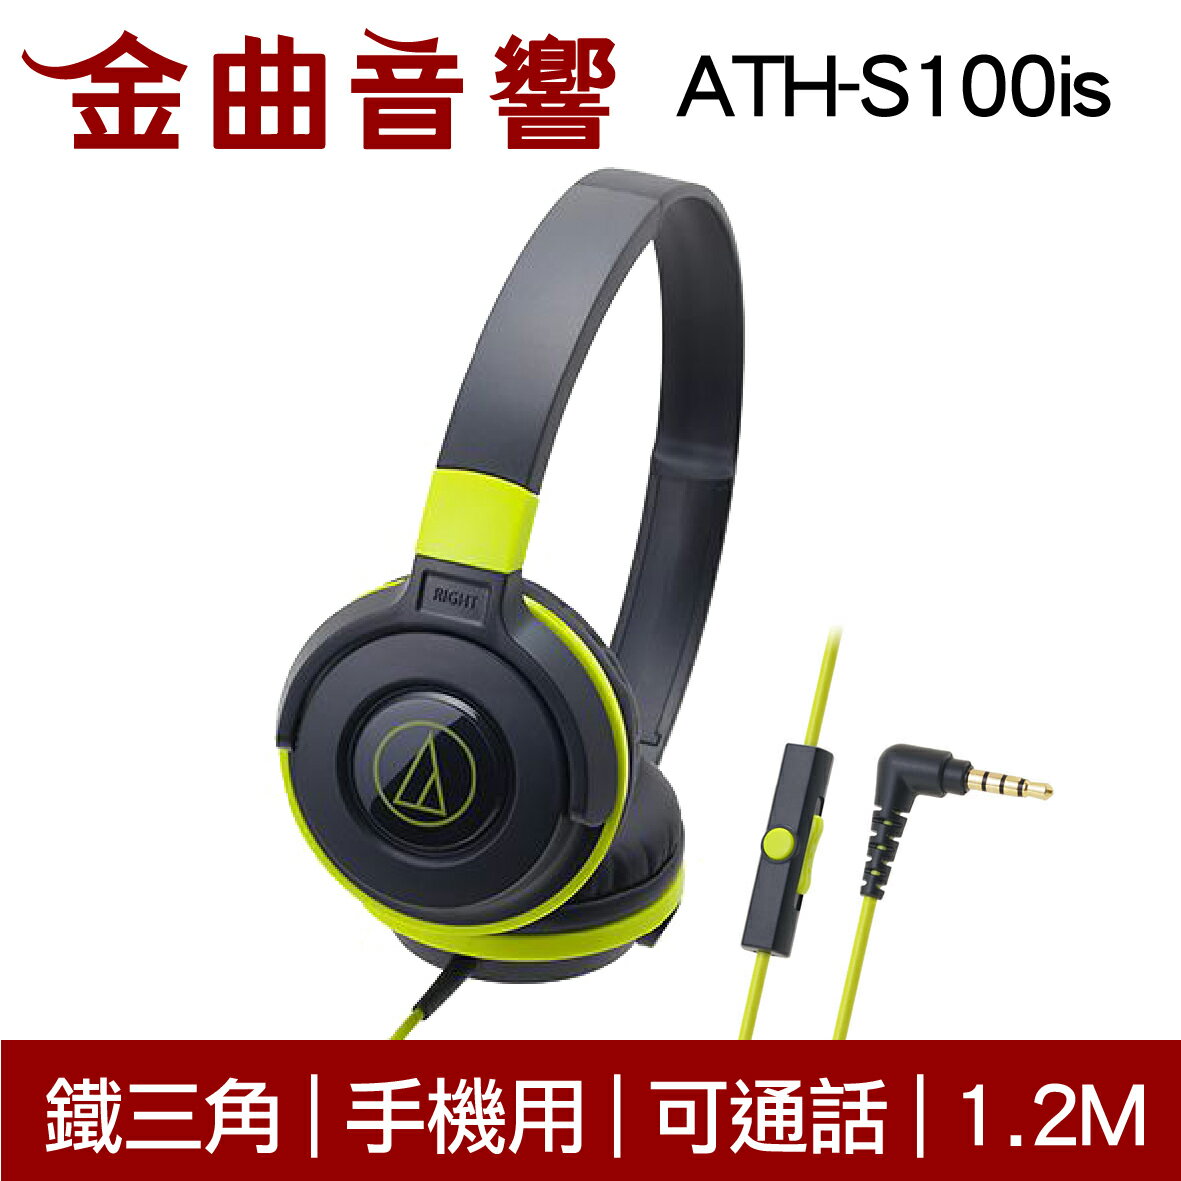 鐵三角 ATH-S100is 黑綠色 兒童耳機 大人 皆適用 耳罩式耳機 麥克風版 IOS/安卓適用 | 金曲音響